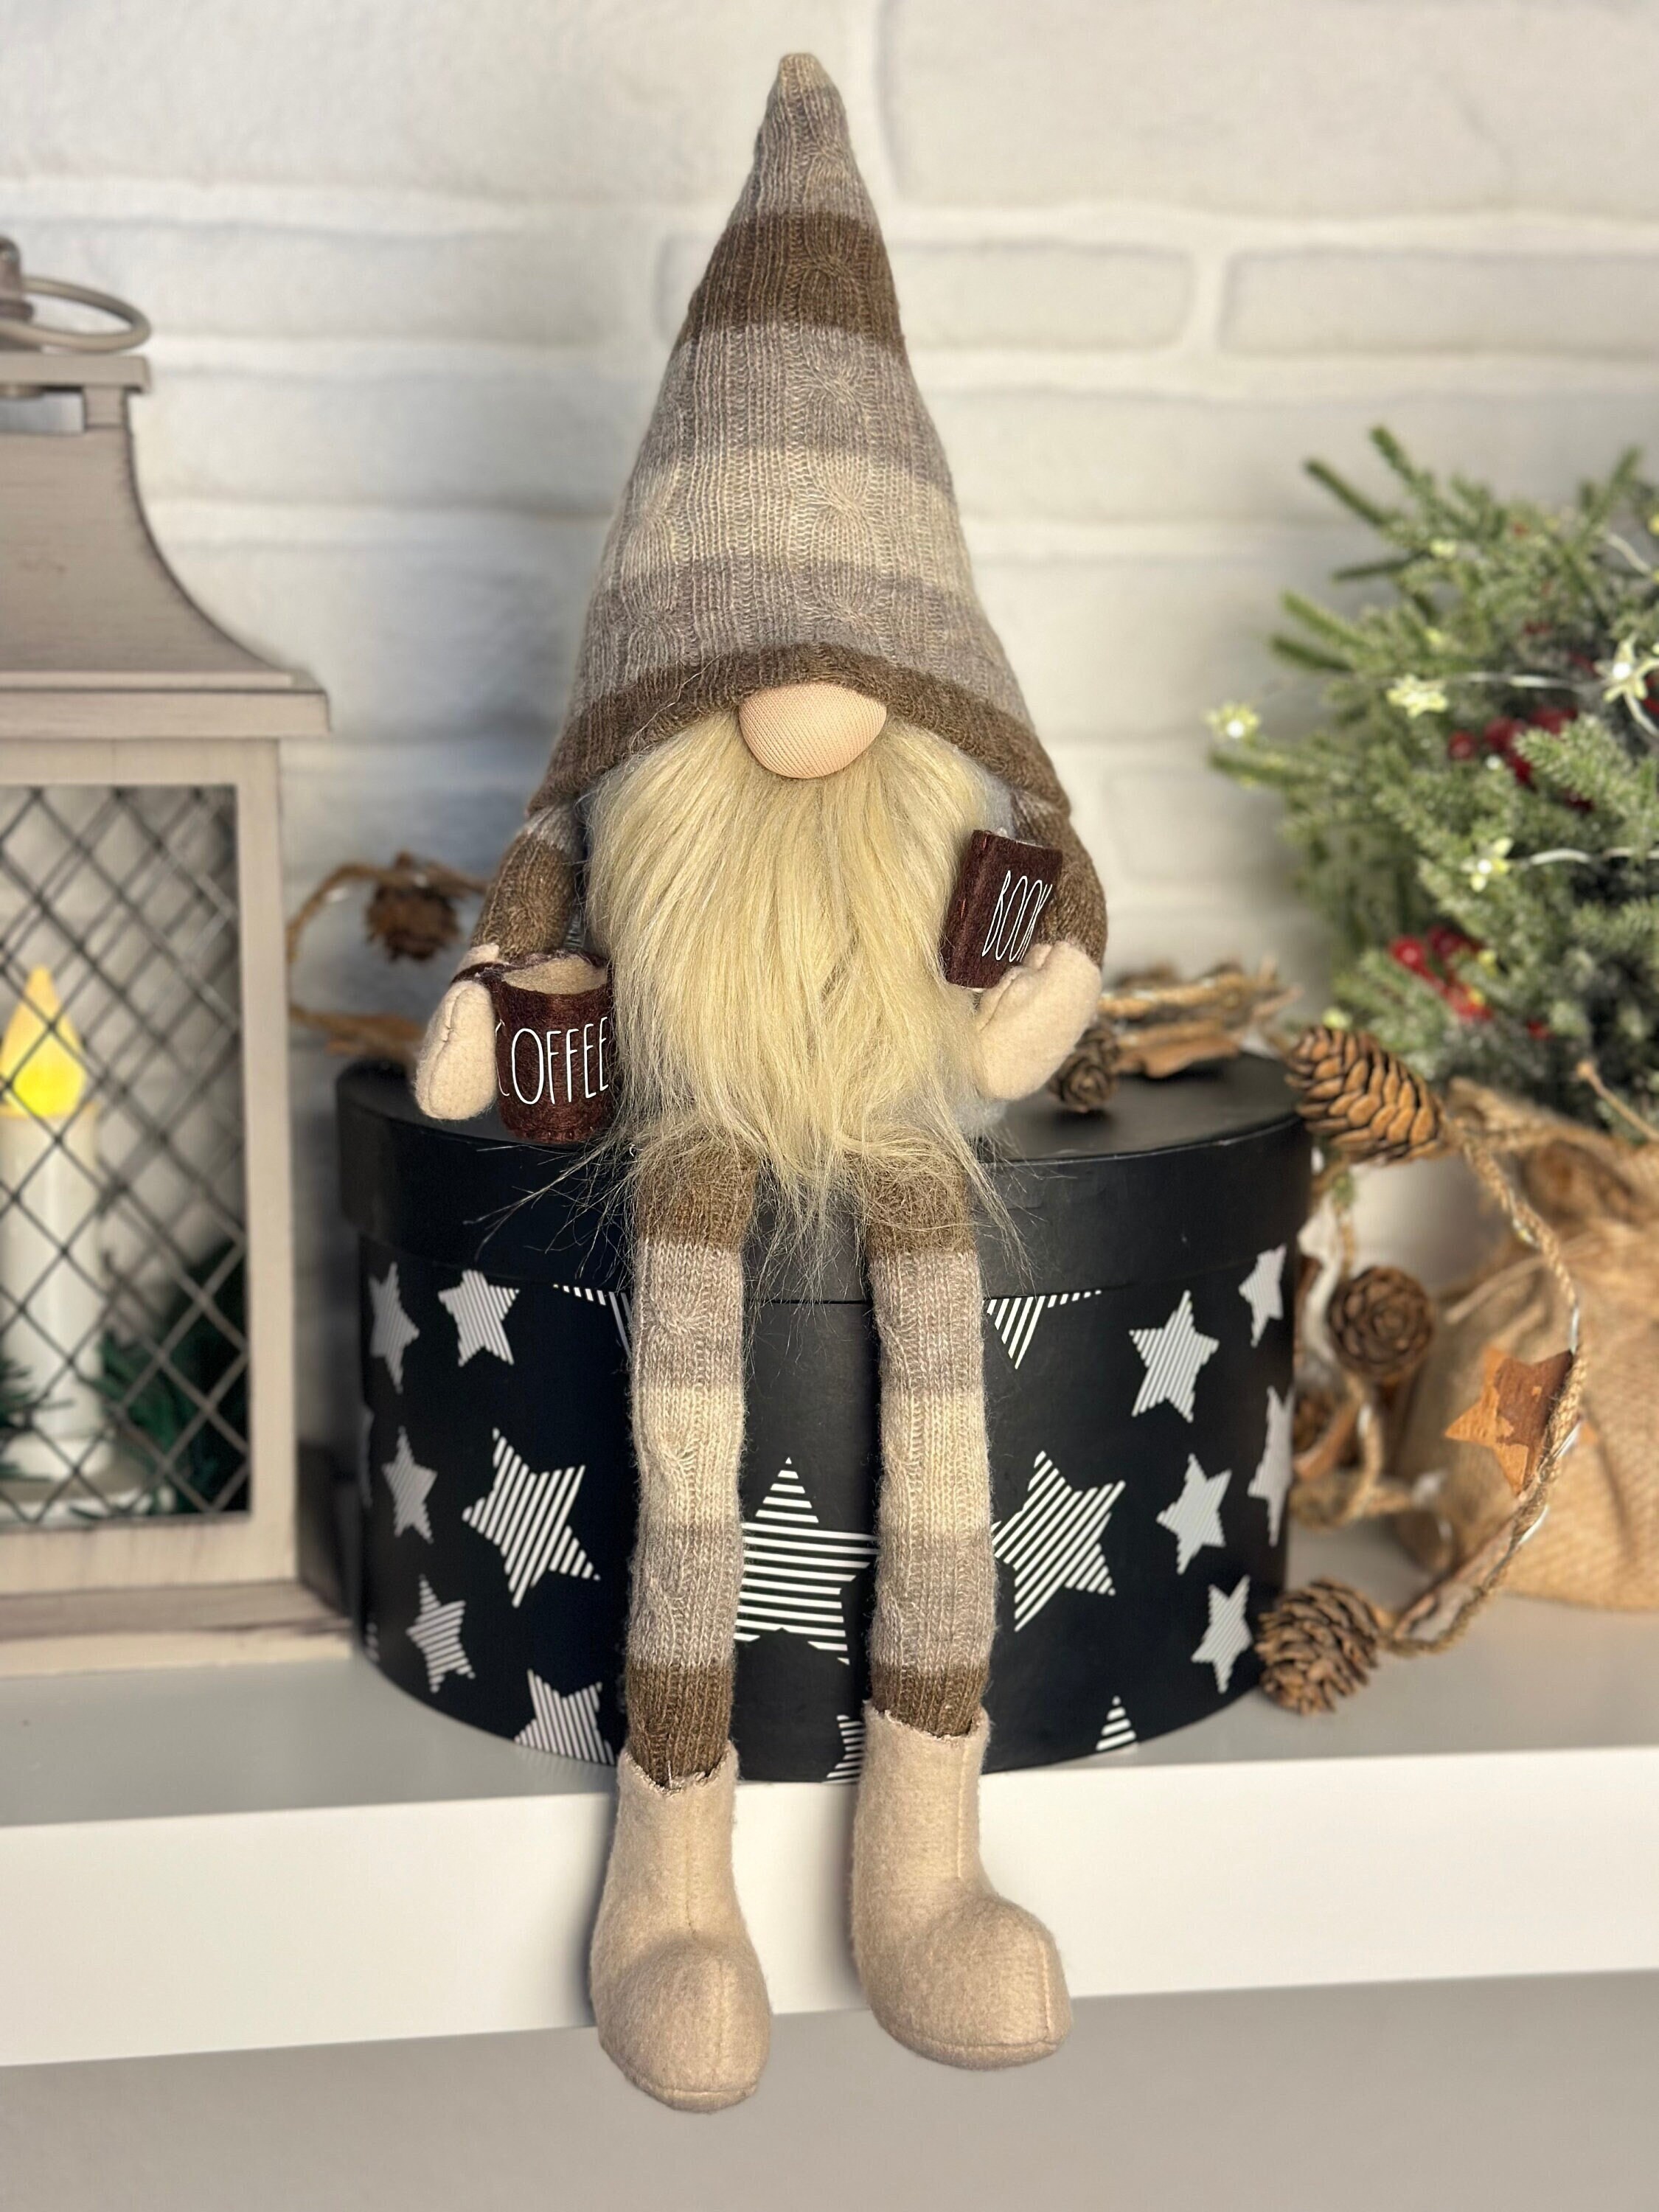 Tradition du Lutin de Noël -Elf on the Shelf - Belgique